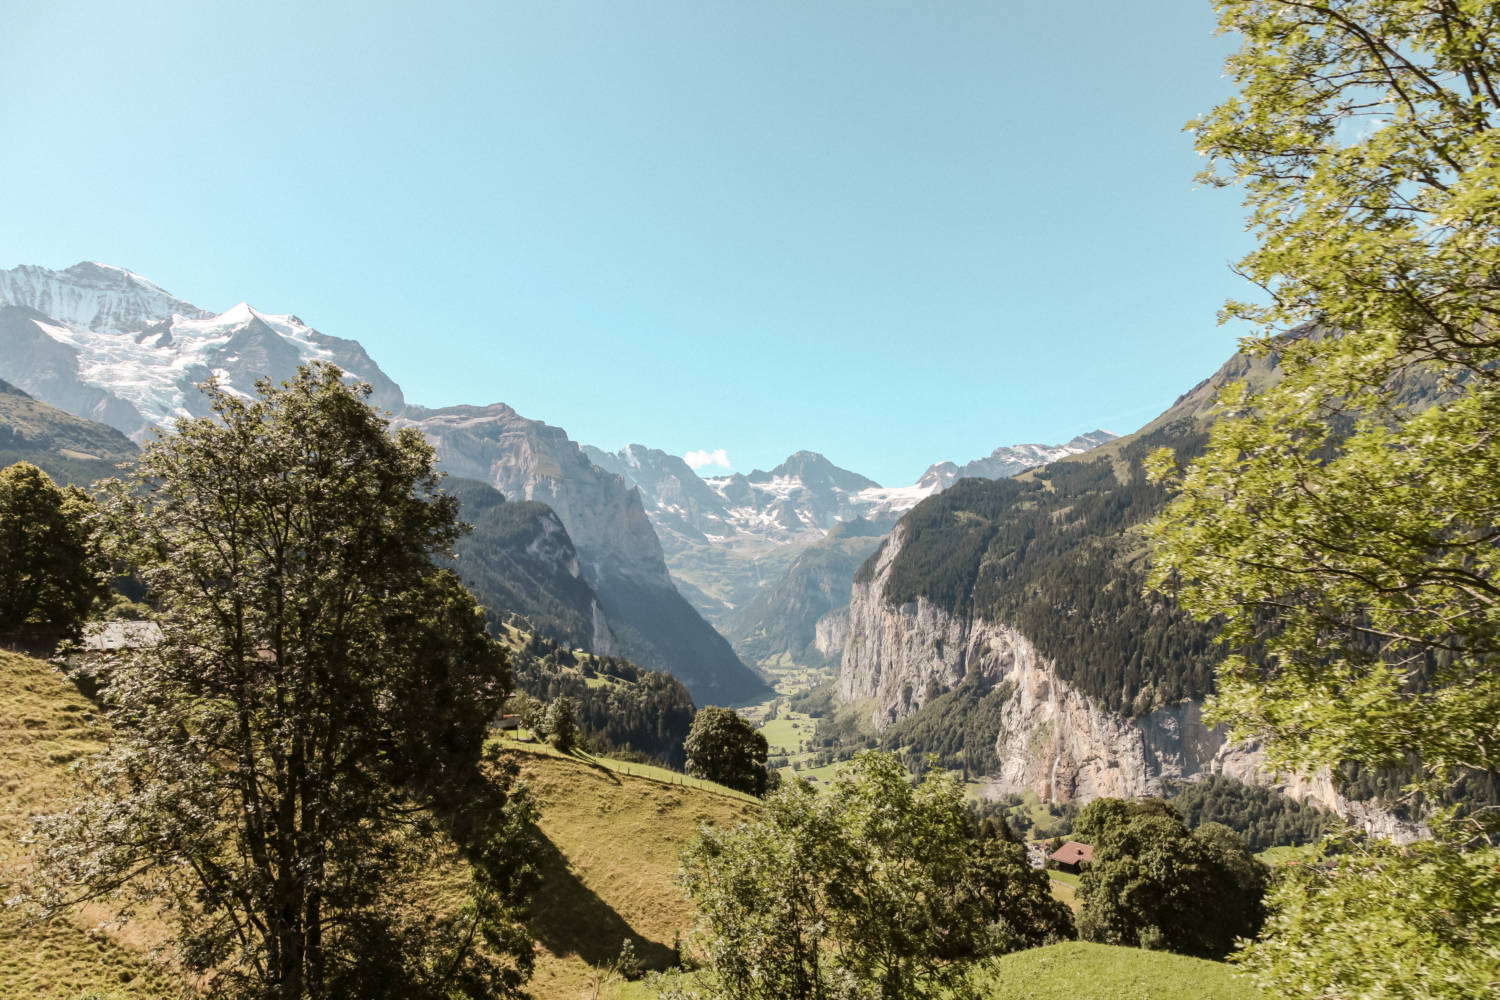 Wengernalp Switzerland Travel Guide by luxury travel blogger Amy Marietta